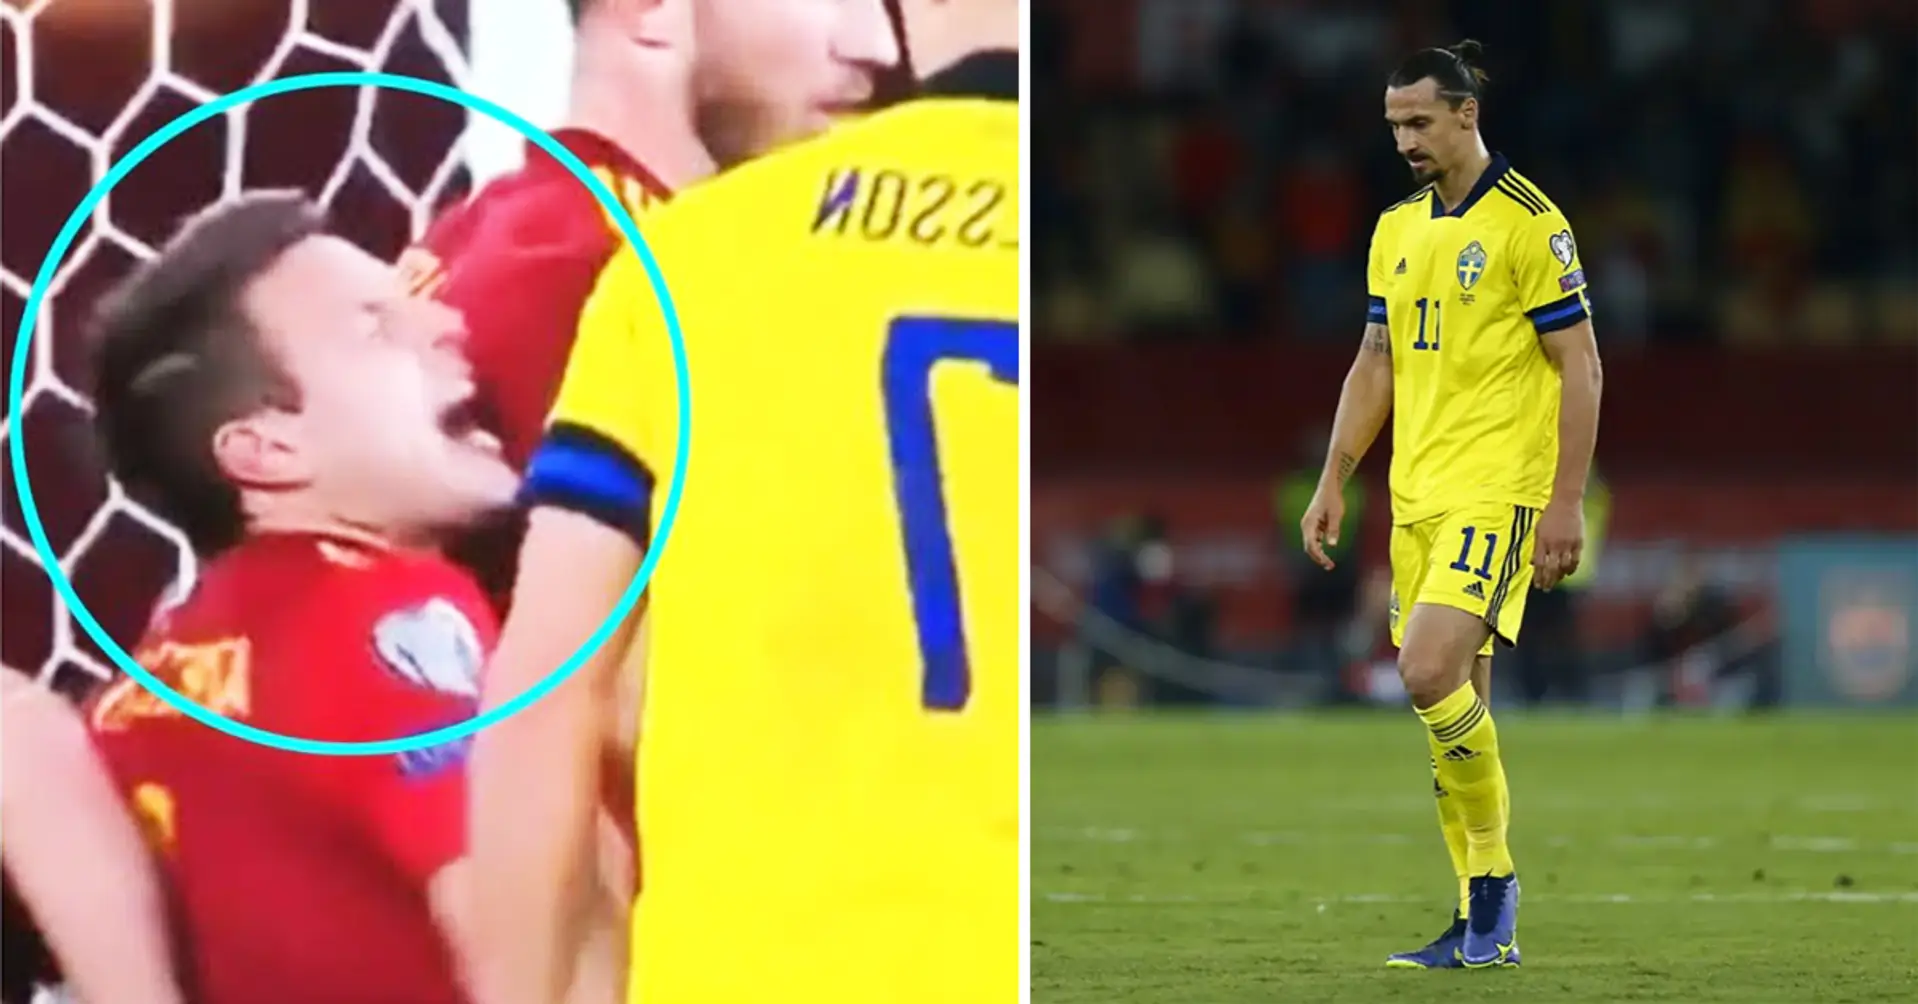 Cesar Azpilicueta sendet eine 4-Wörter-Botschaft nach Zlatan Ibrahimovics brutalem Angriff